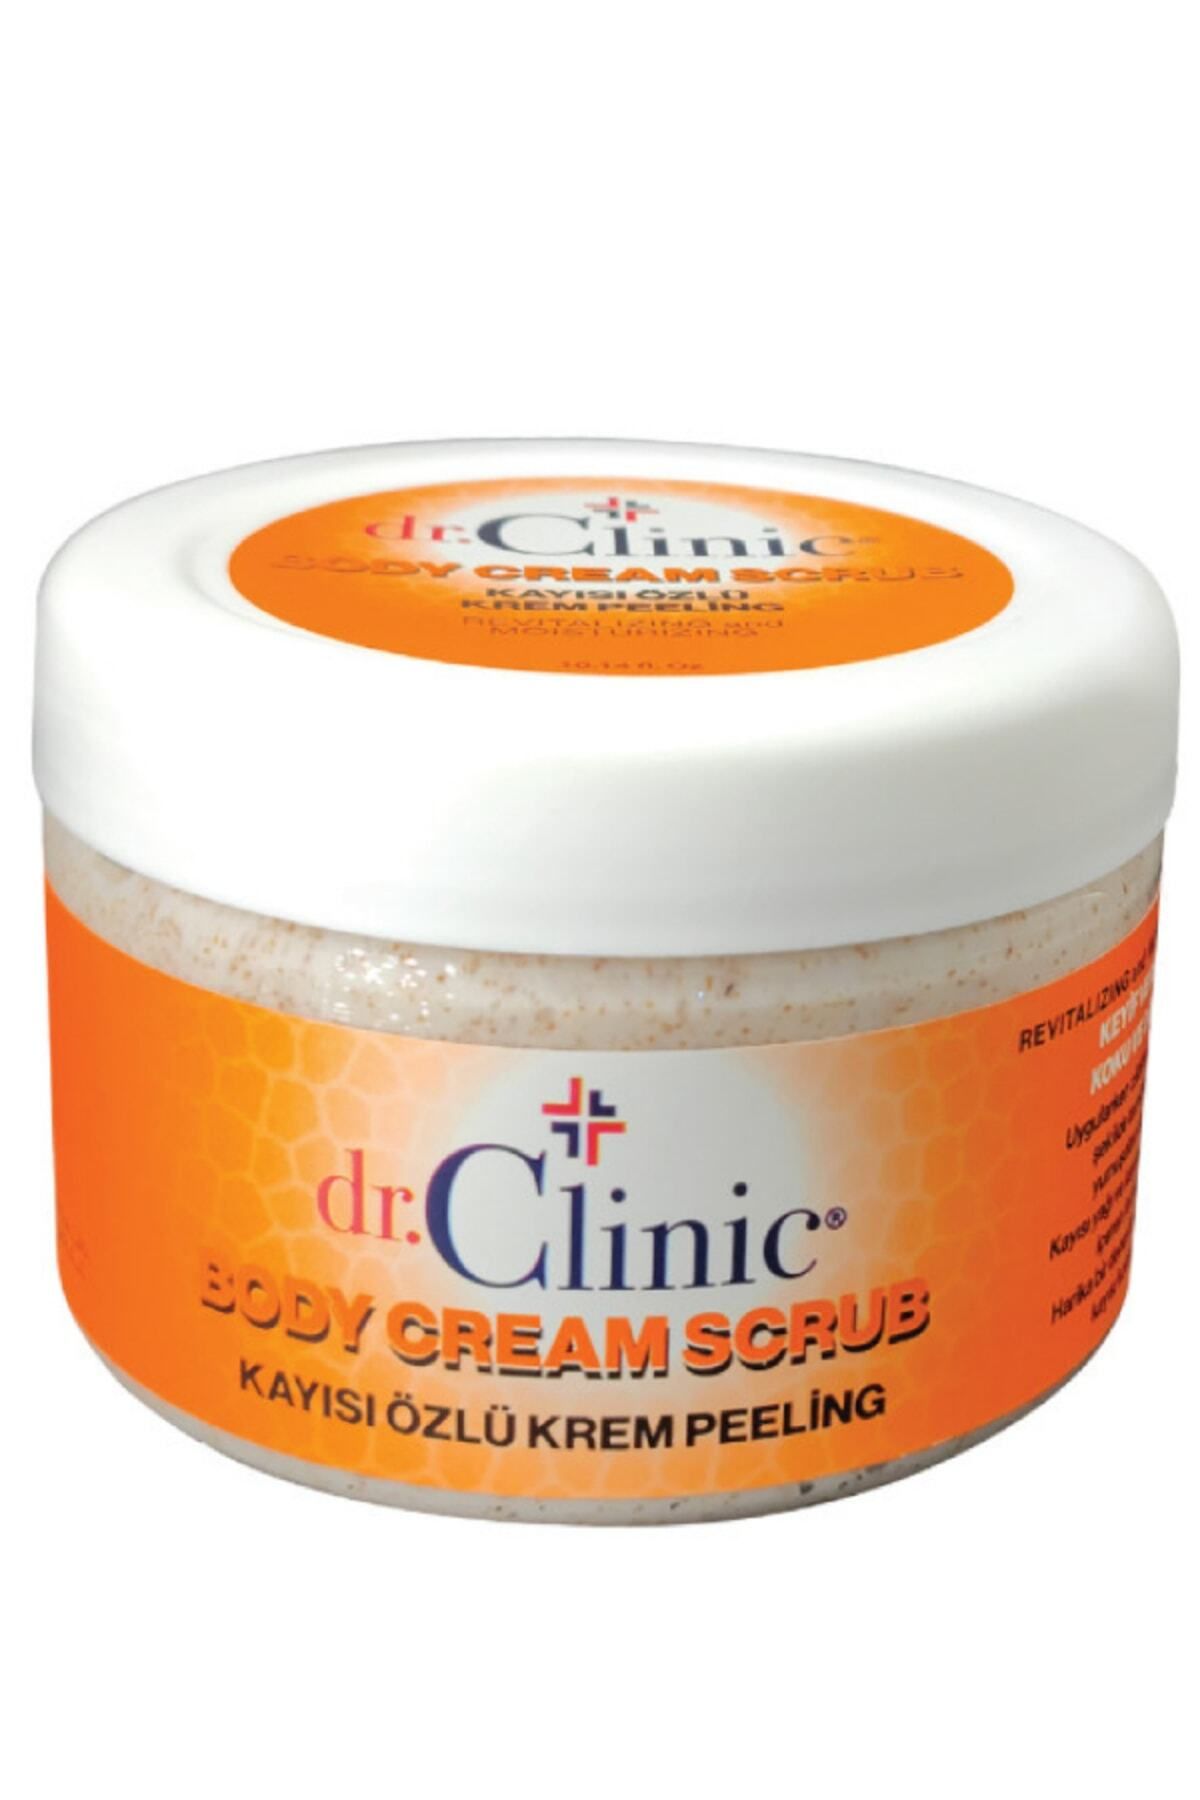 Dr. Clinic Kayısı Özlü Krem Peeling (300 Ml) Body Cream Scrub